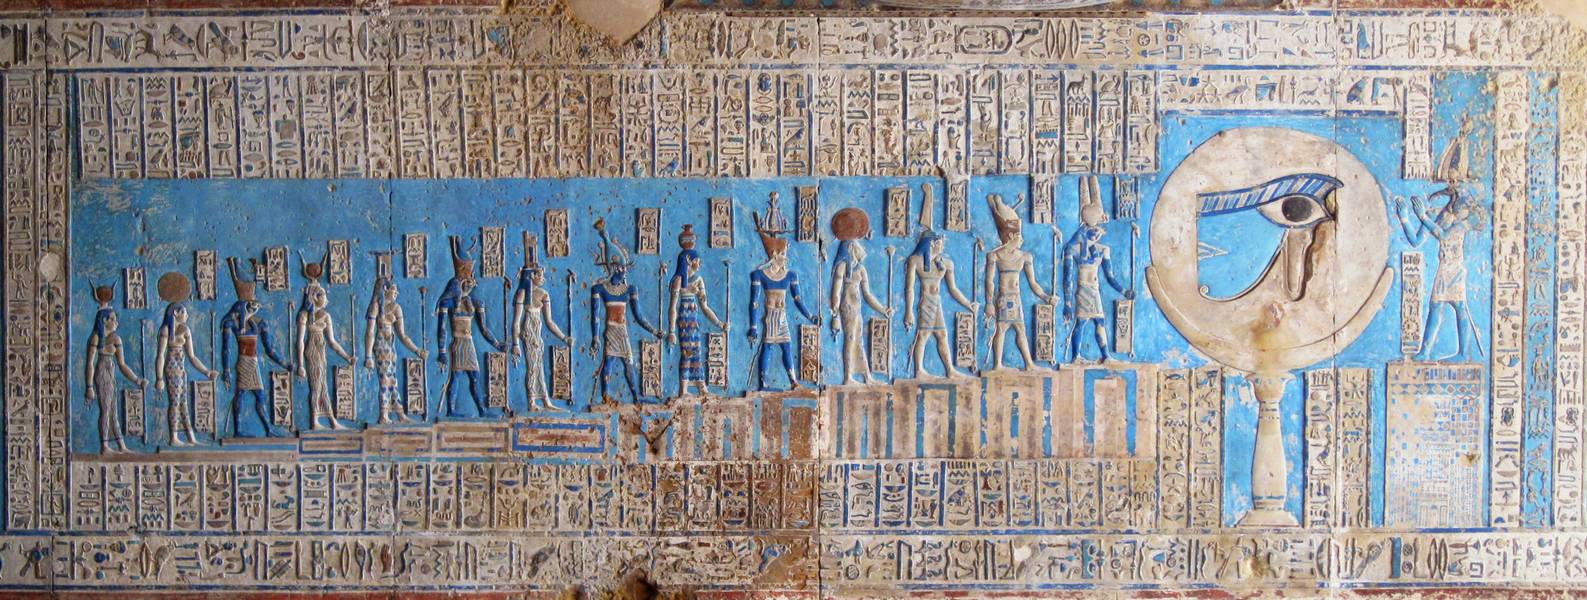 Tempio di Dendera, Alto Egitto